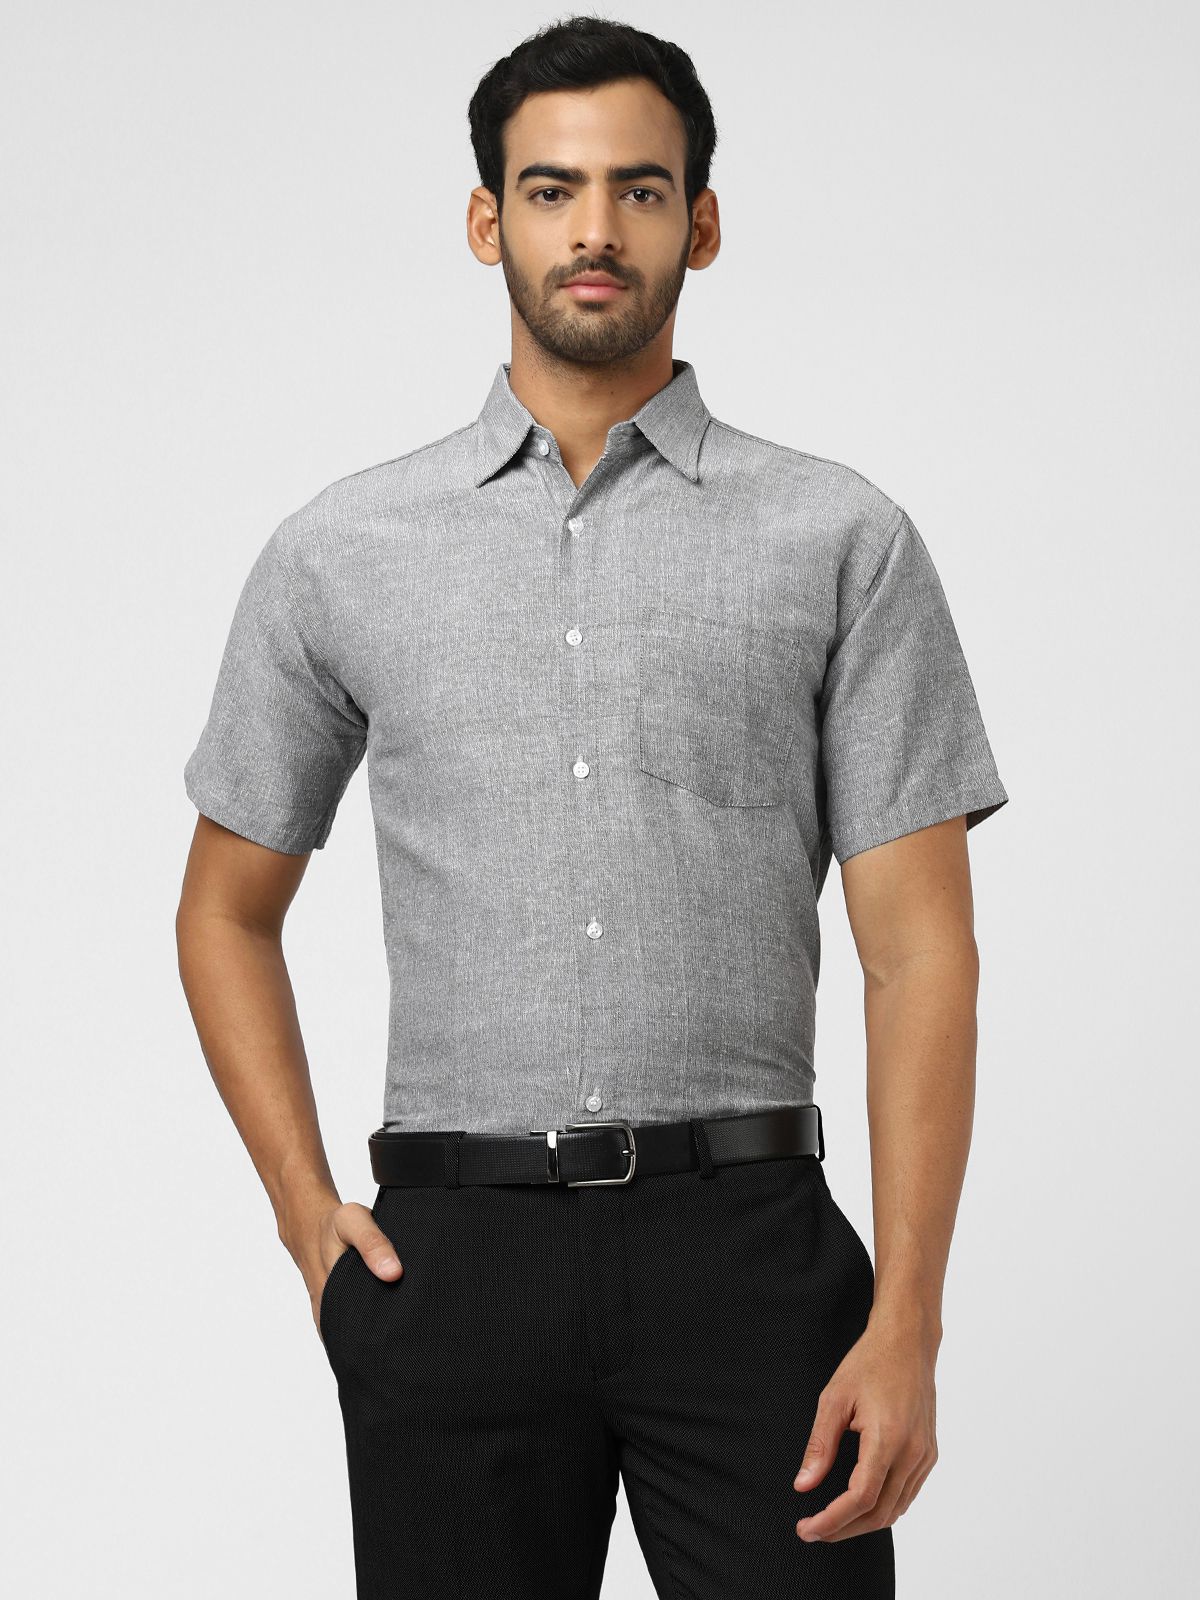     			DESHBANDHU DBK - Grey Cotton Regular Fit Men's Formal Shirt (Pack of 1)